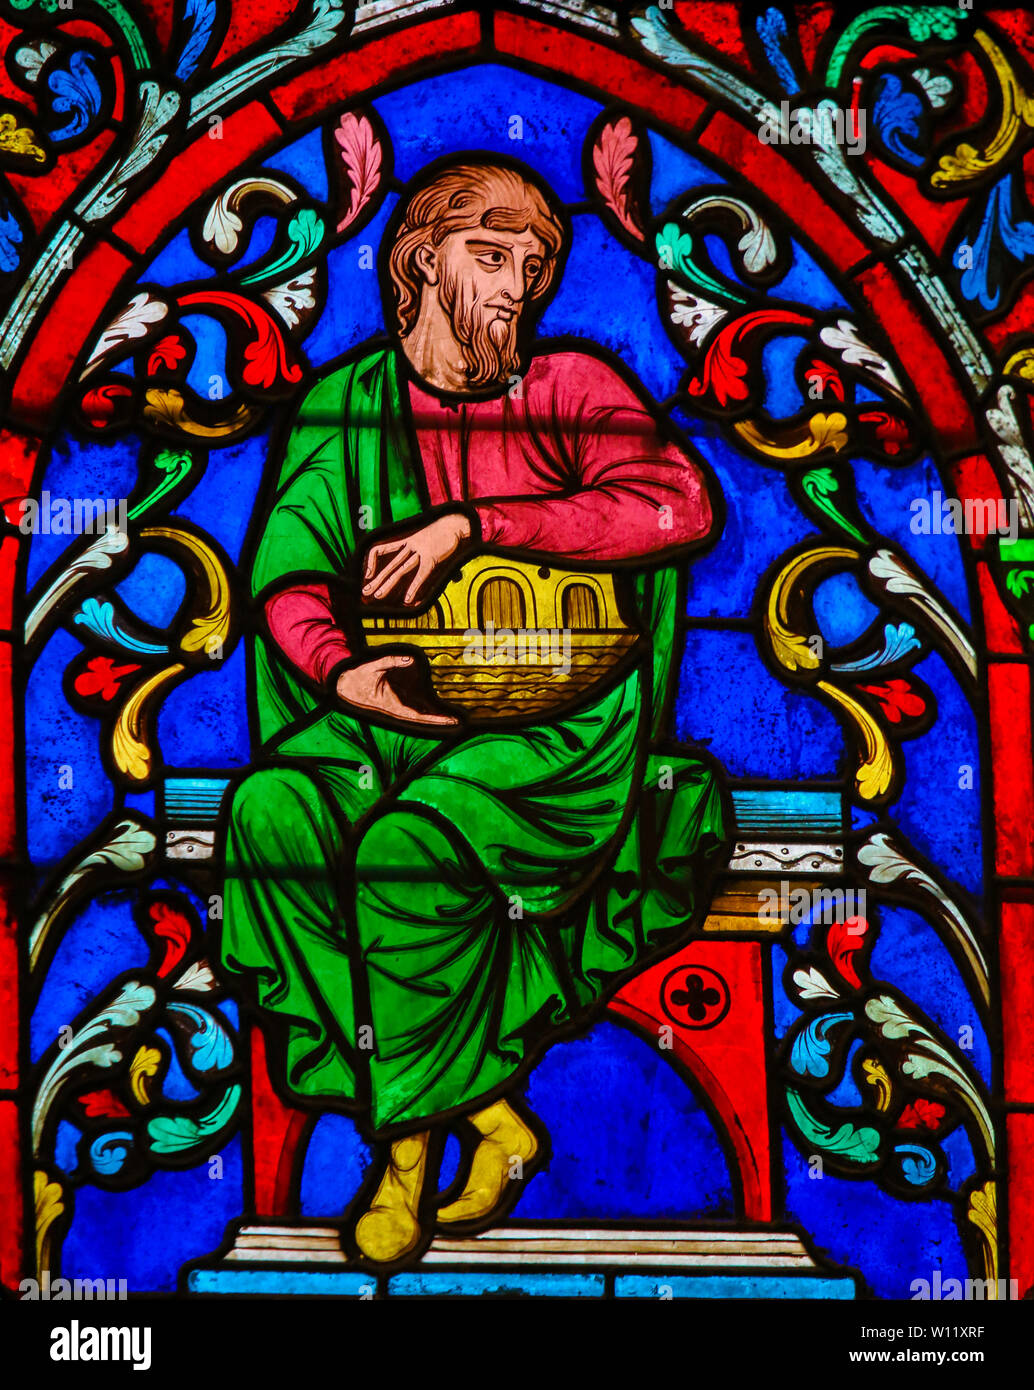 Vitraux dans la Cathédrale de Notre Dame, Paris, France, représentant Noé et son arche Banque D'Images